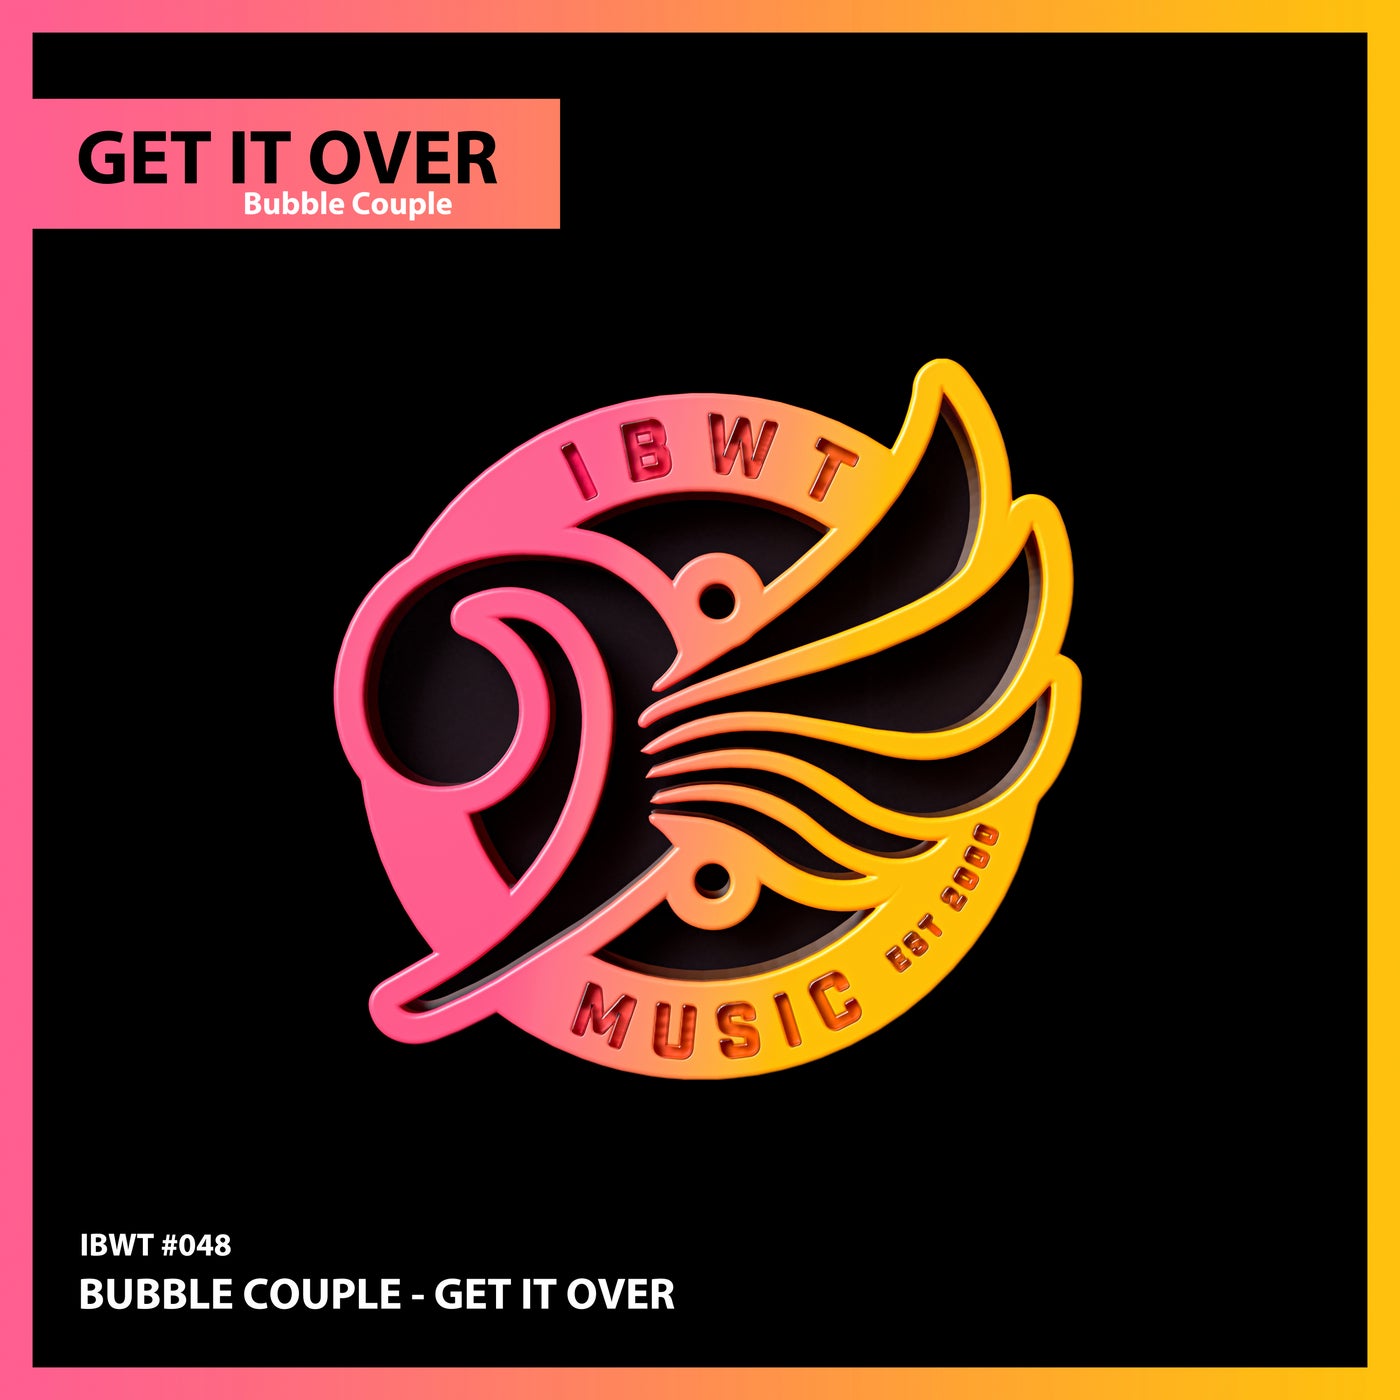 DOWNLOAD Bucie – Get Over It (Original) – ZAMUSIC